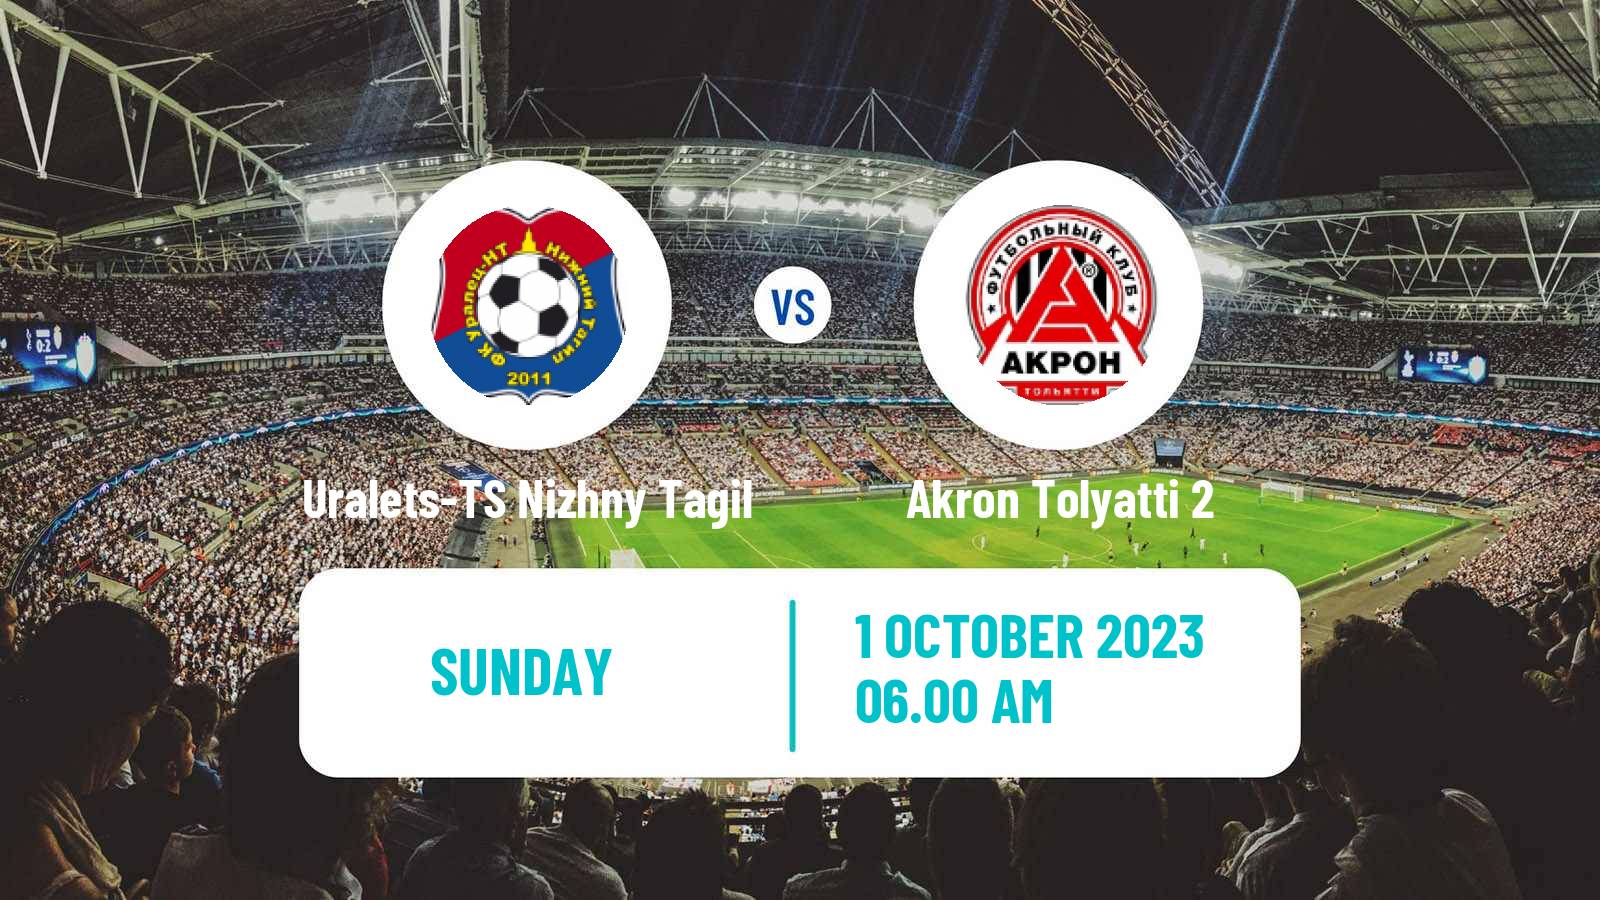 Soccer  FNL 2 Division B Group 4 Uralets-TS Nizhny Tagil - Akron Tolyatti 2